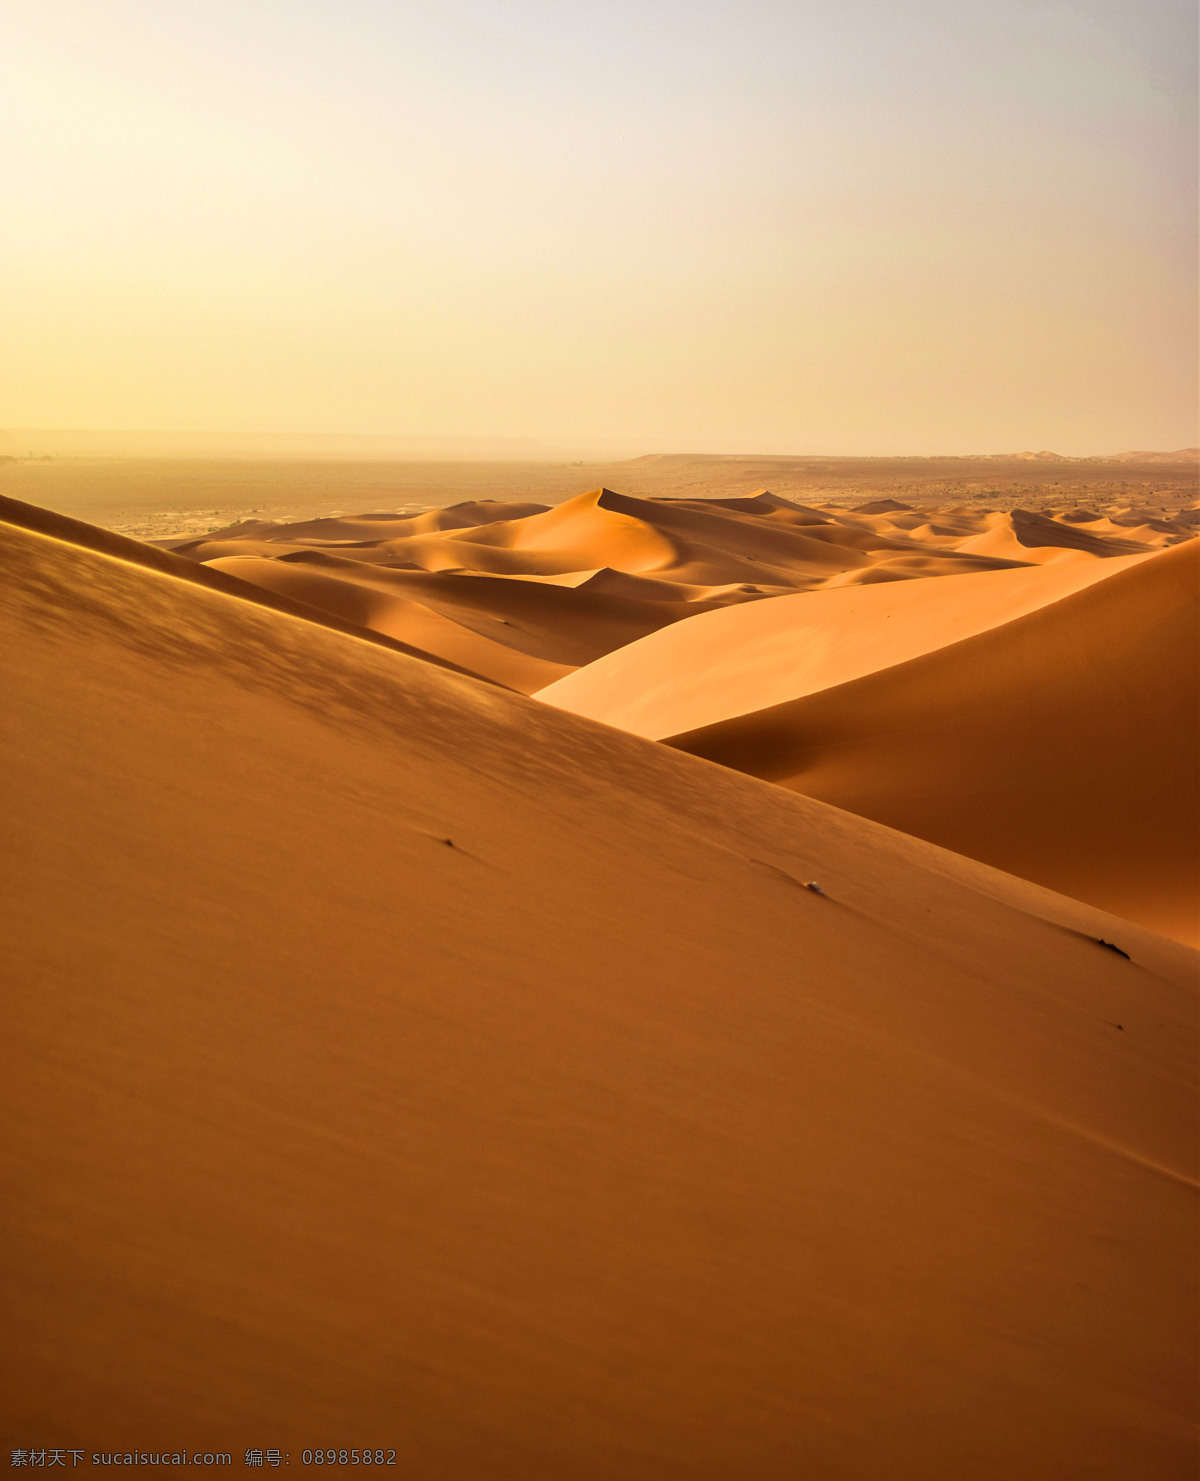 夕阳沙漠 沙漠 旅游 日落 夕阳 风景 高清 大图 自然景观 自然风景